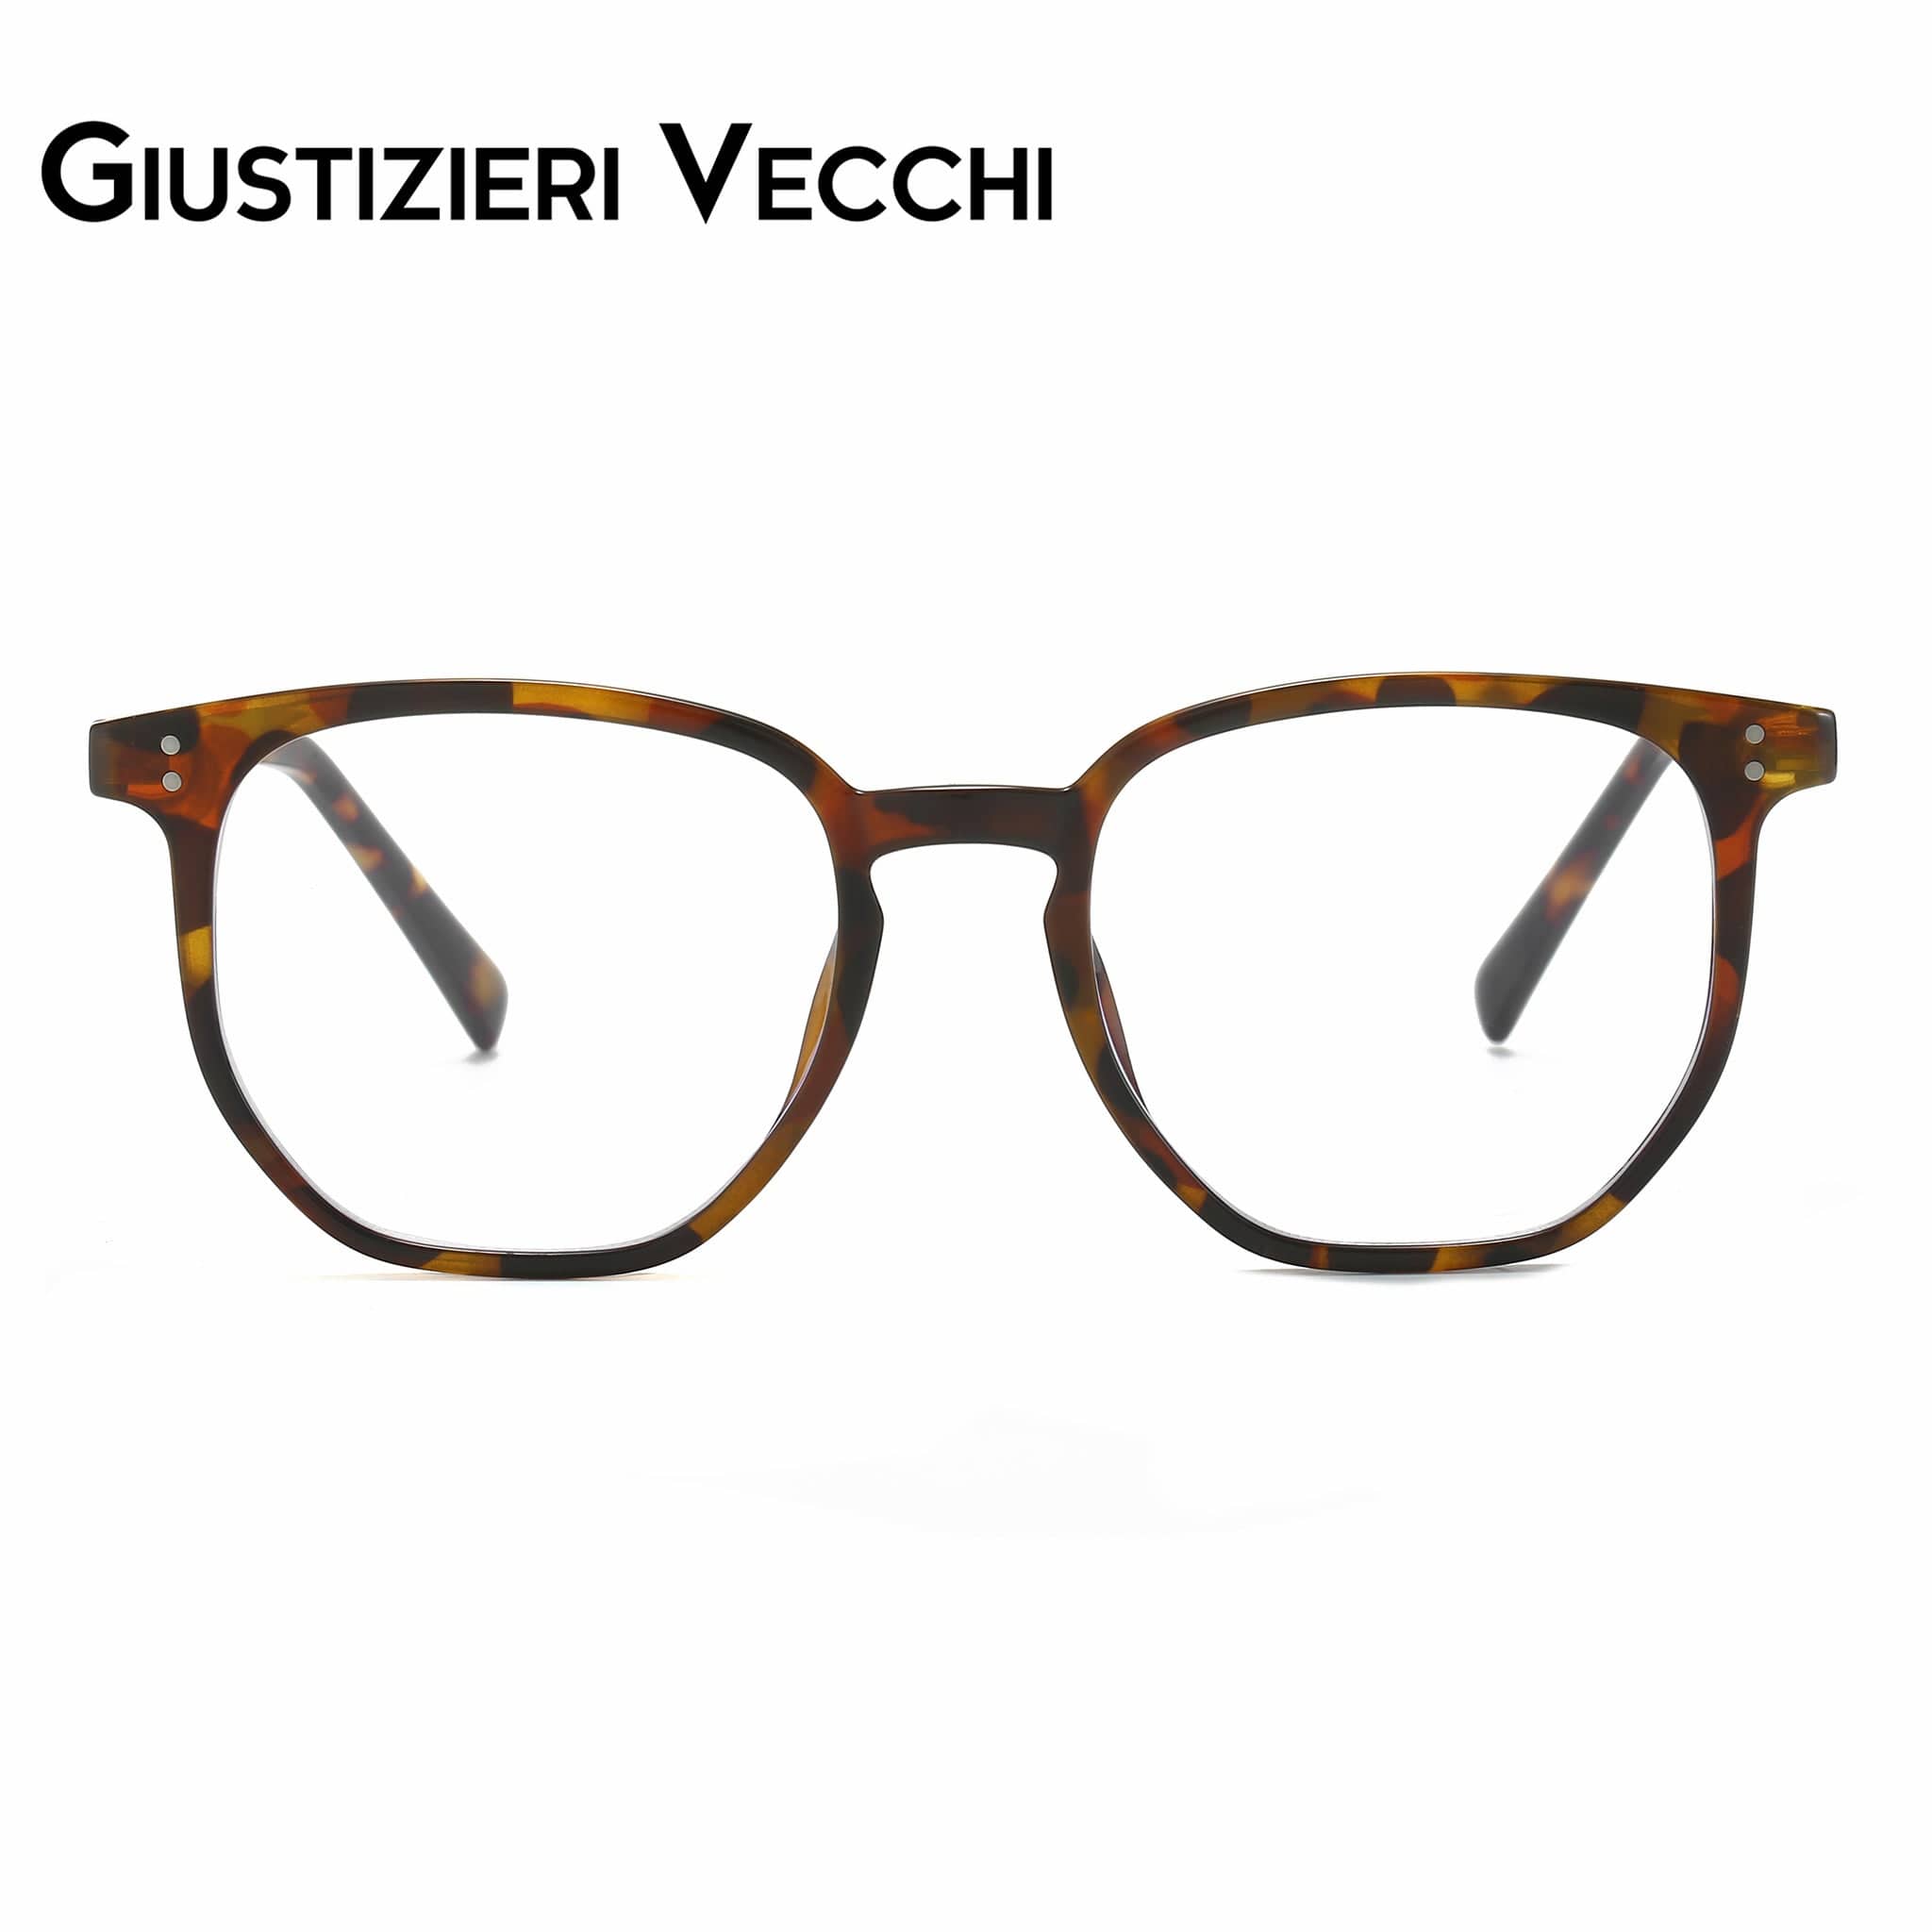 GIUSTIZIERI VECCHI Eyeglasses Small / Brown Tortoise Venezia Vista Uno